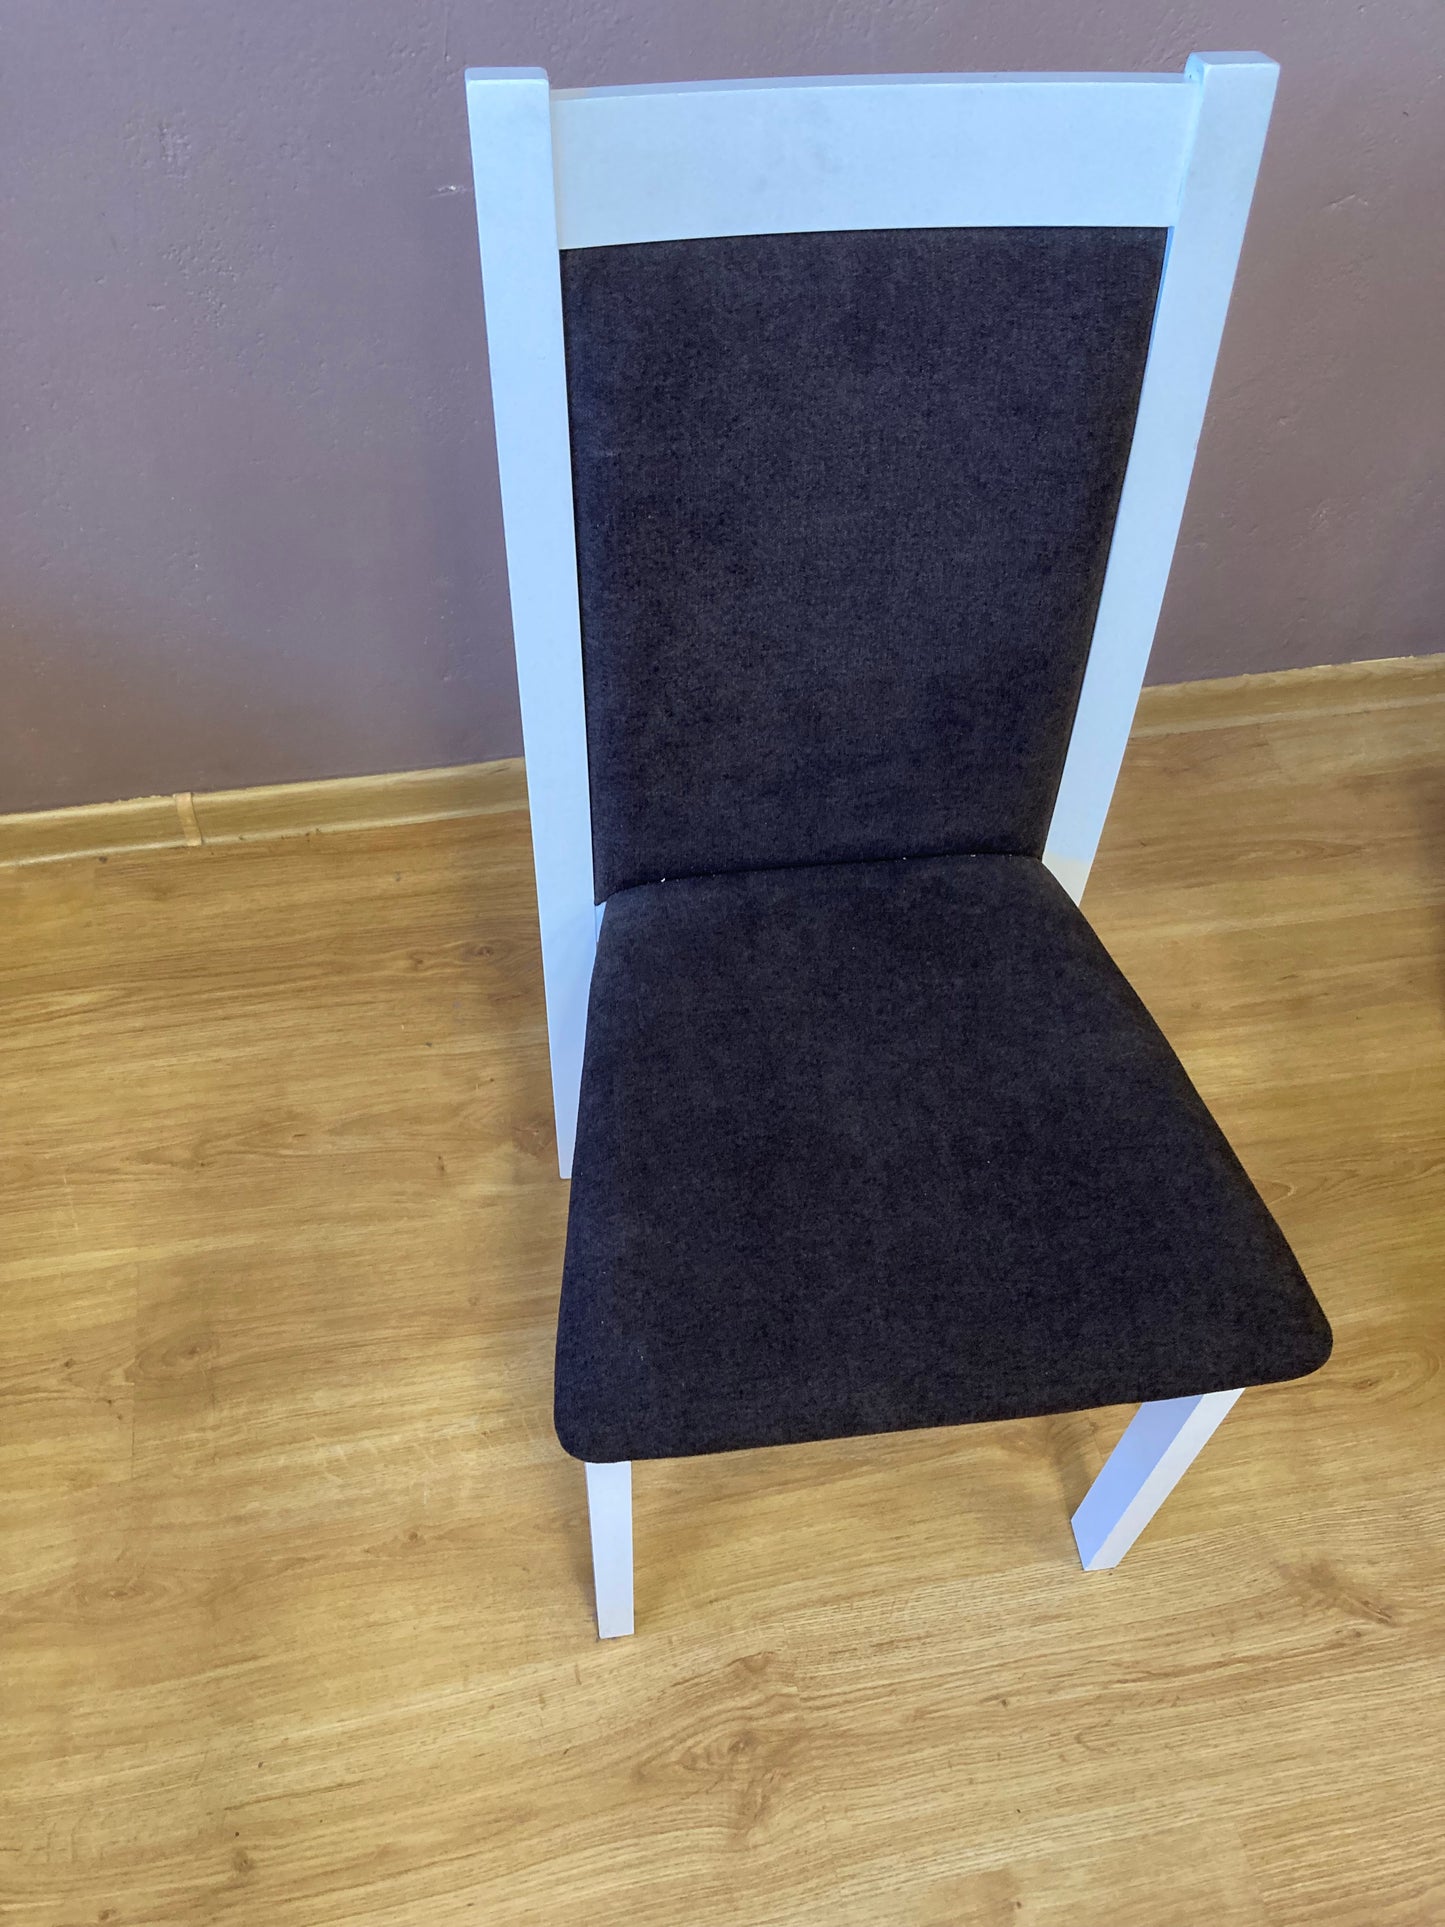 Krzesło wyprzedażowe KT-S2 białe drewno ciemna tkanina wygląda niezwykle elegancko.